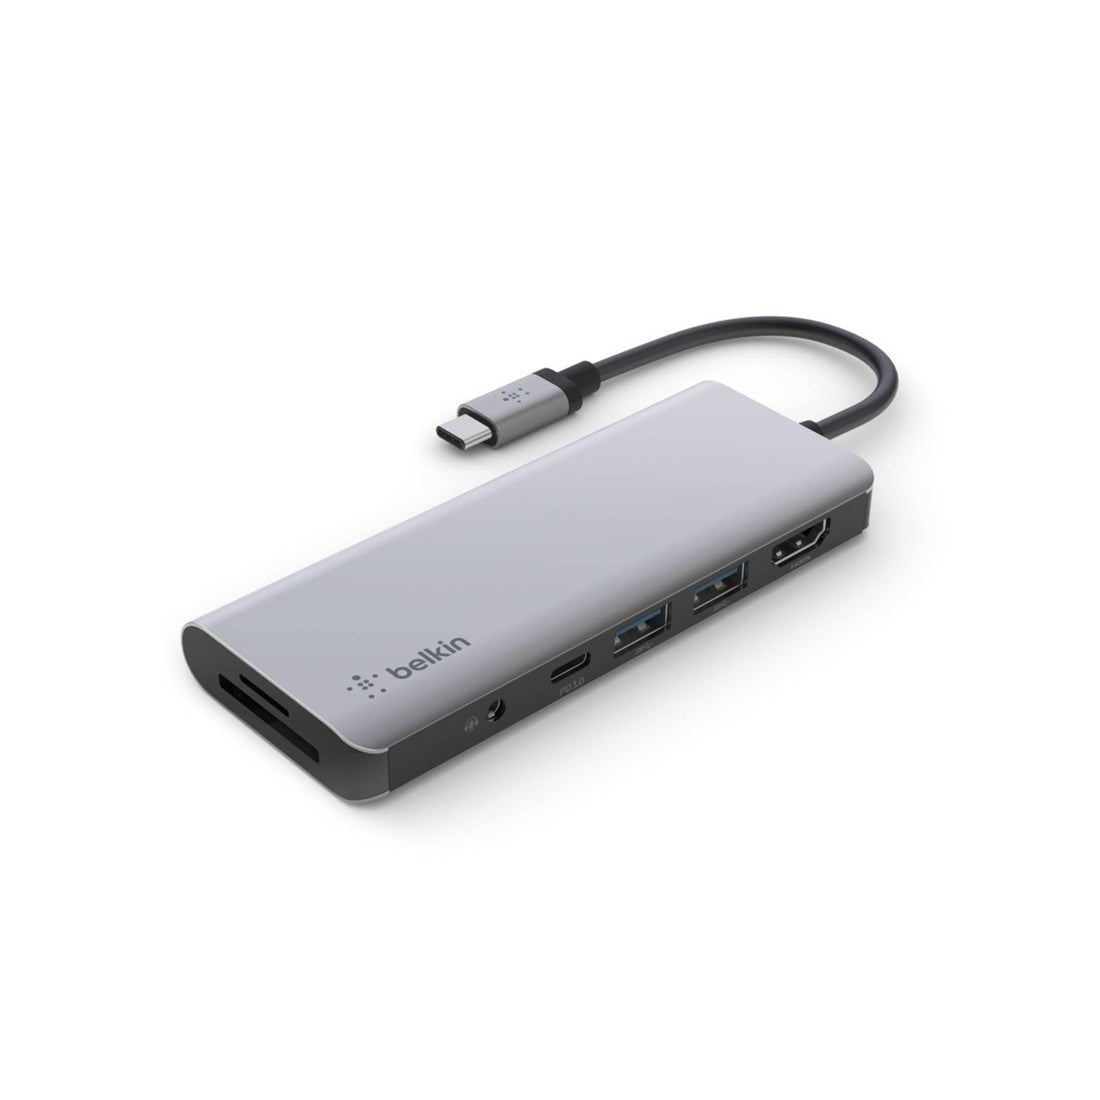 Belkin USB-C 7-in-1 Multiport Adapter - موزع - Store 974 | ستور ٩٧٤